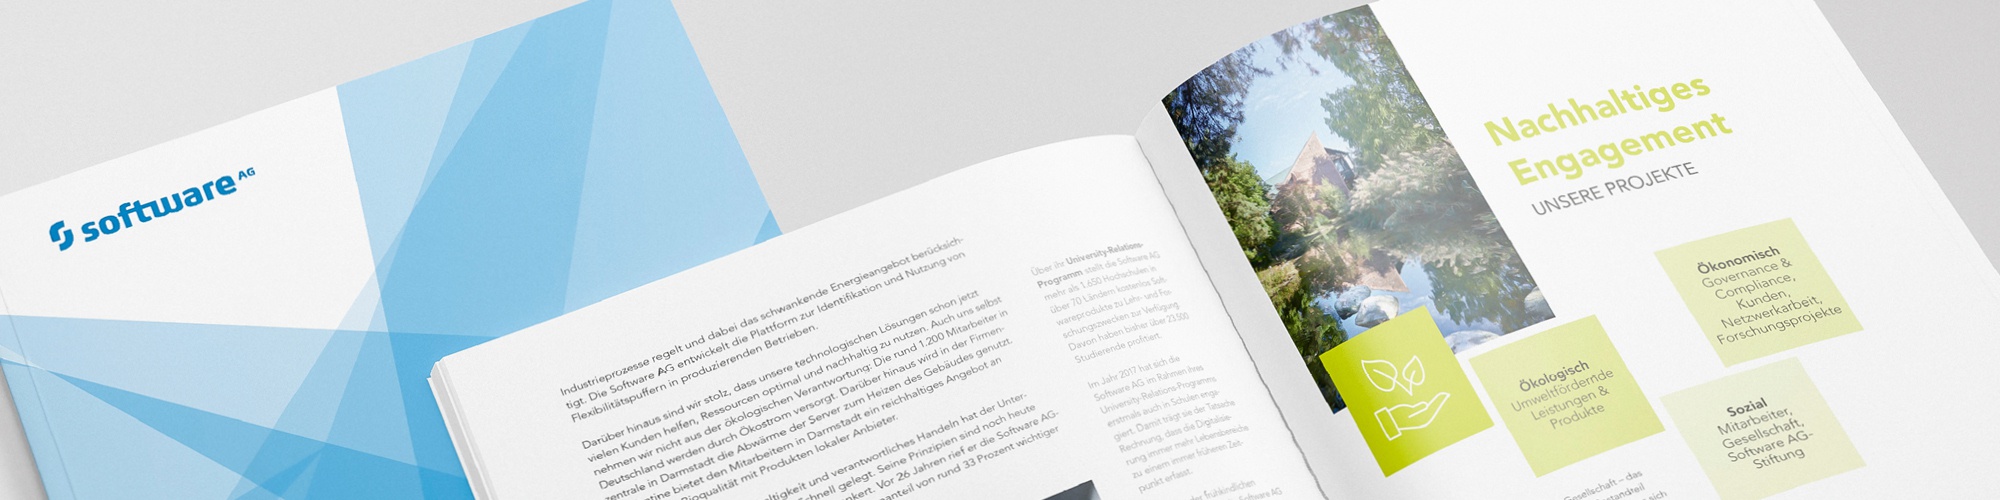 Software AG: Imagebroschüre in Deutsch und Englisch, Konzeption: Covergestaltung, Layout, Umsetzung, Infografiken, Bildbearbeitung, Reinzeichnung und Druckausgabe